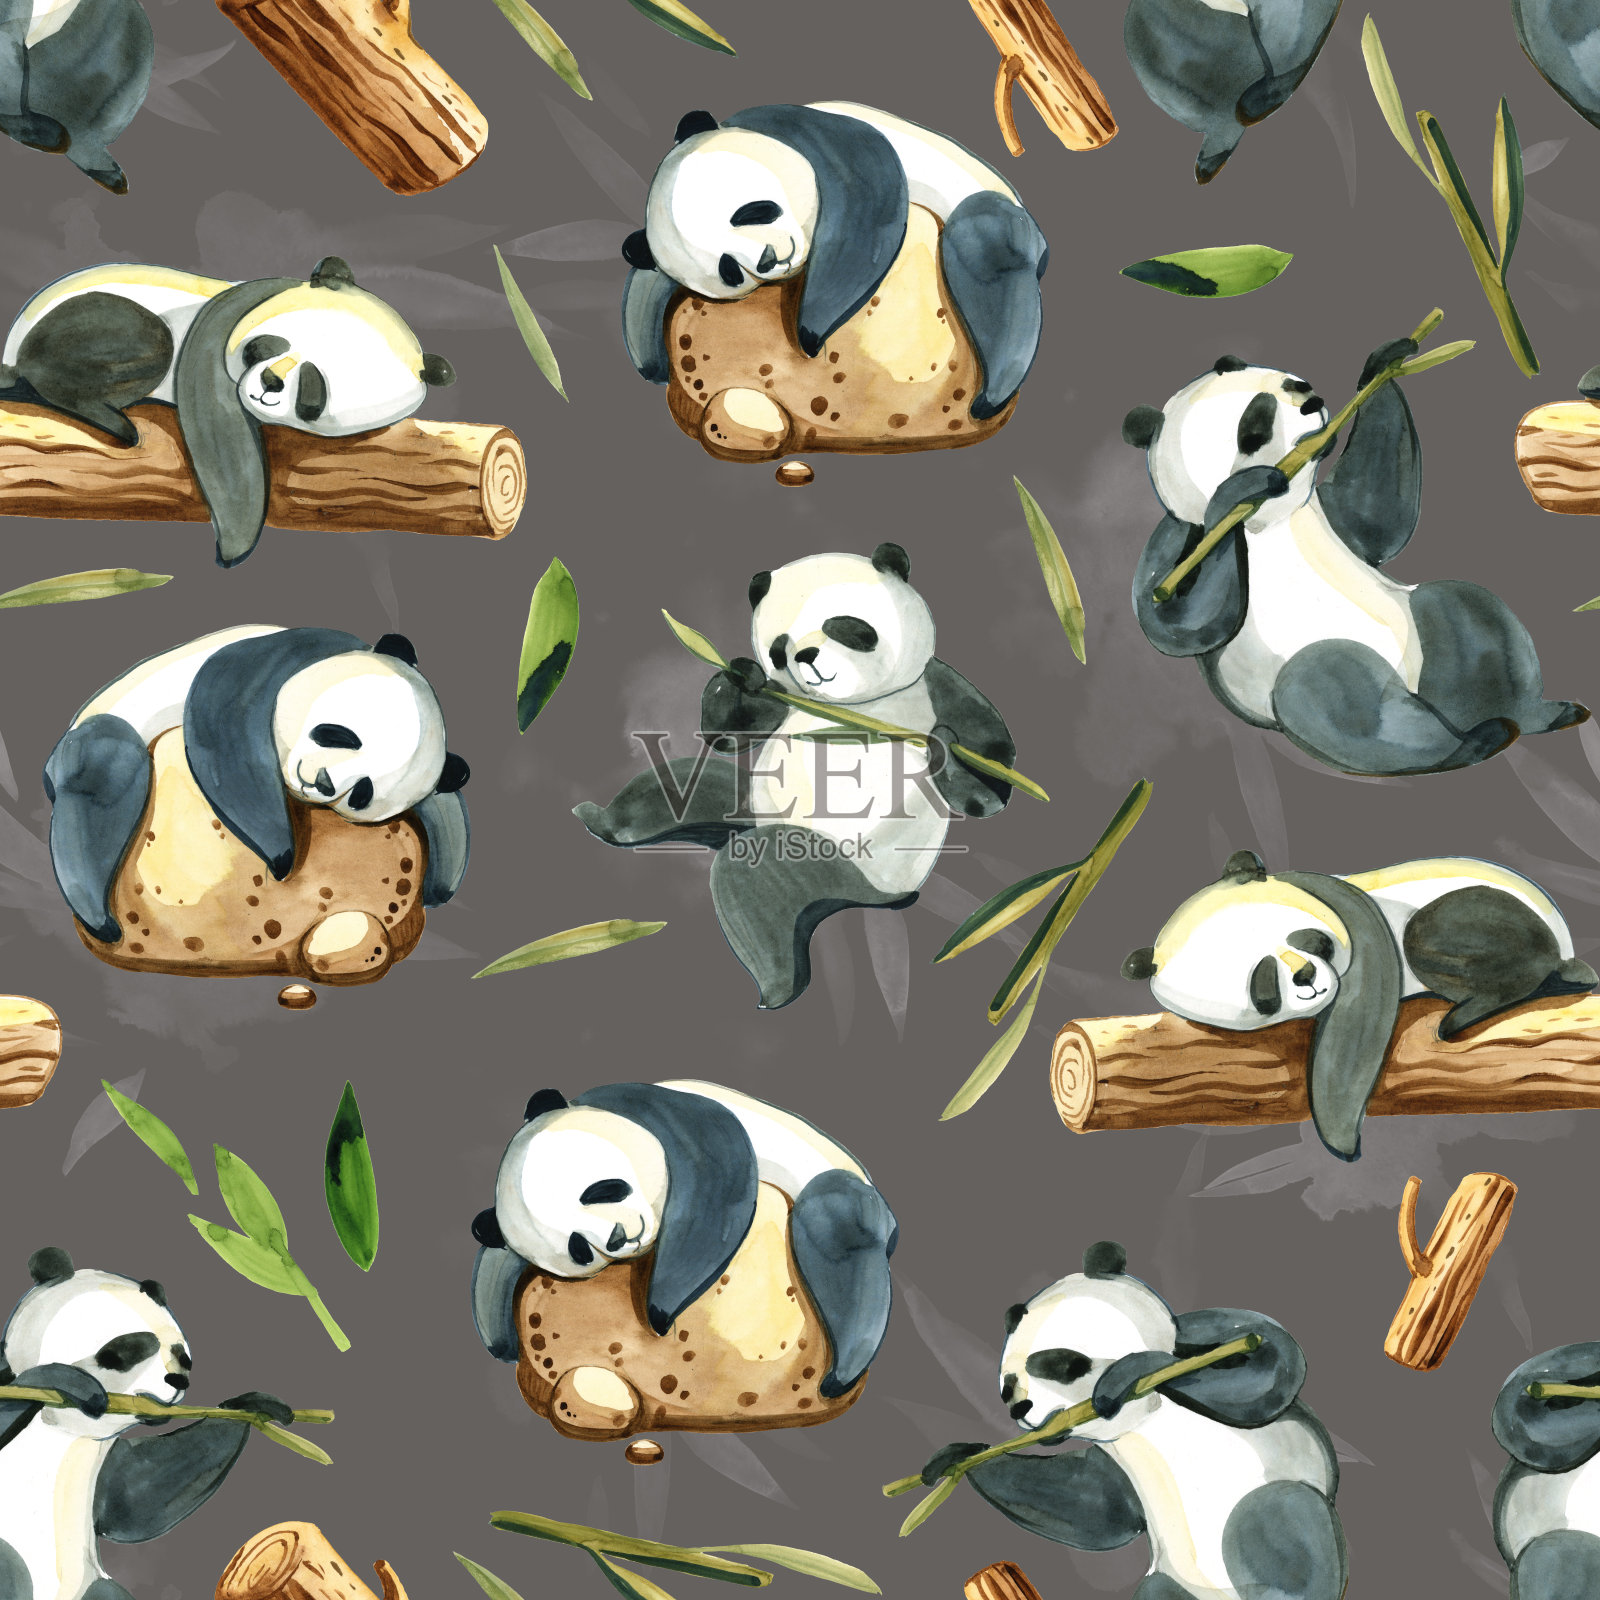 水彩插图上的灰色背景。黑白熊猫、石头、绿色飞溅和树叶无缝图案插画图片素材